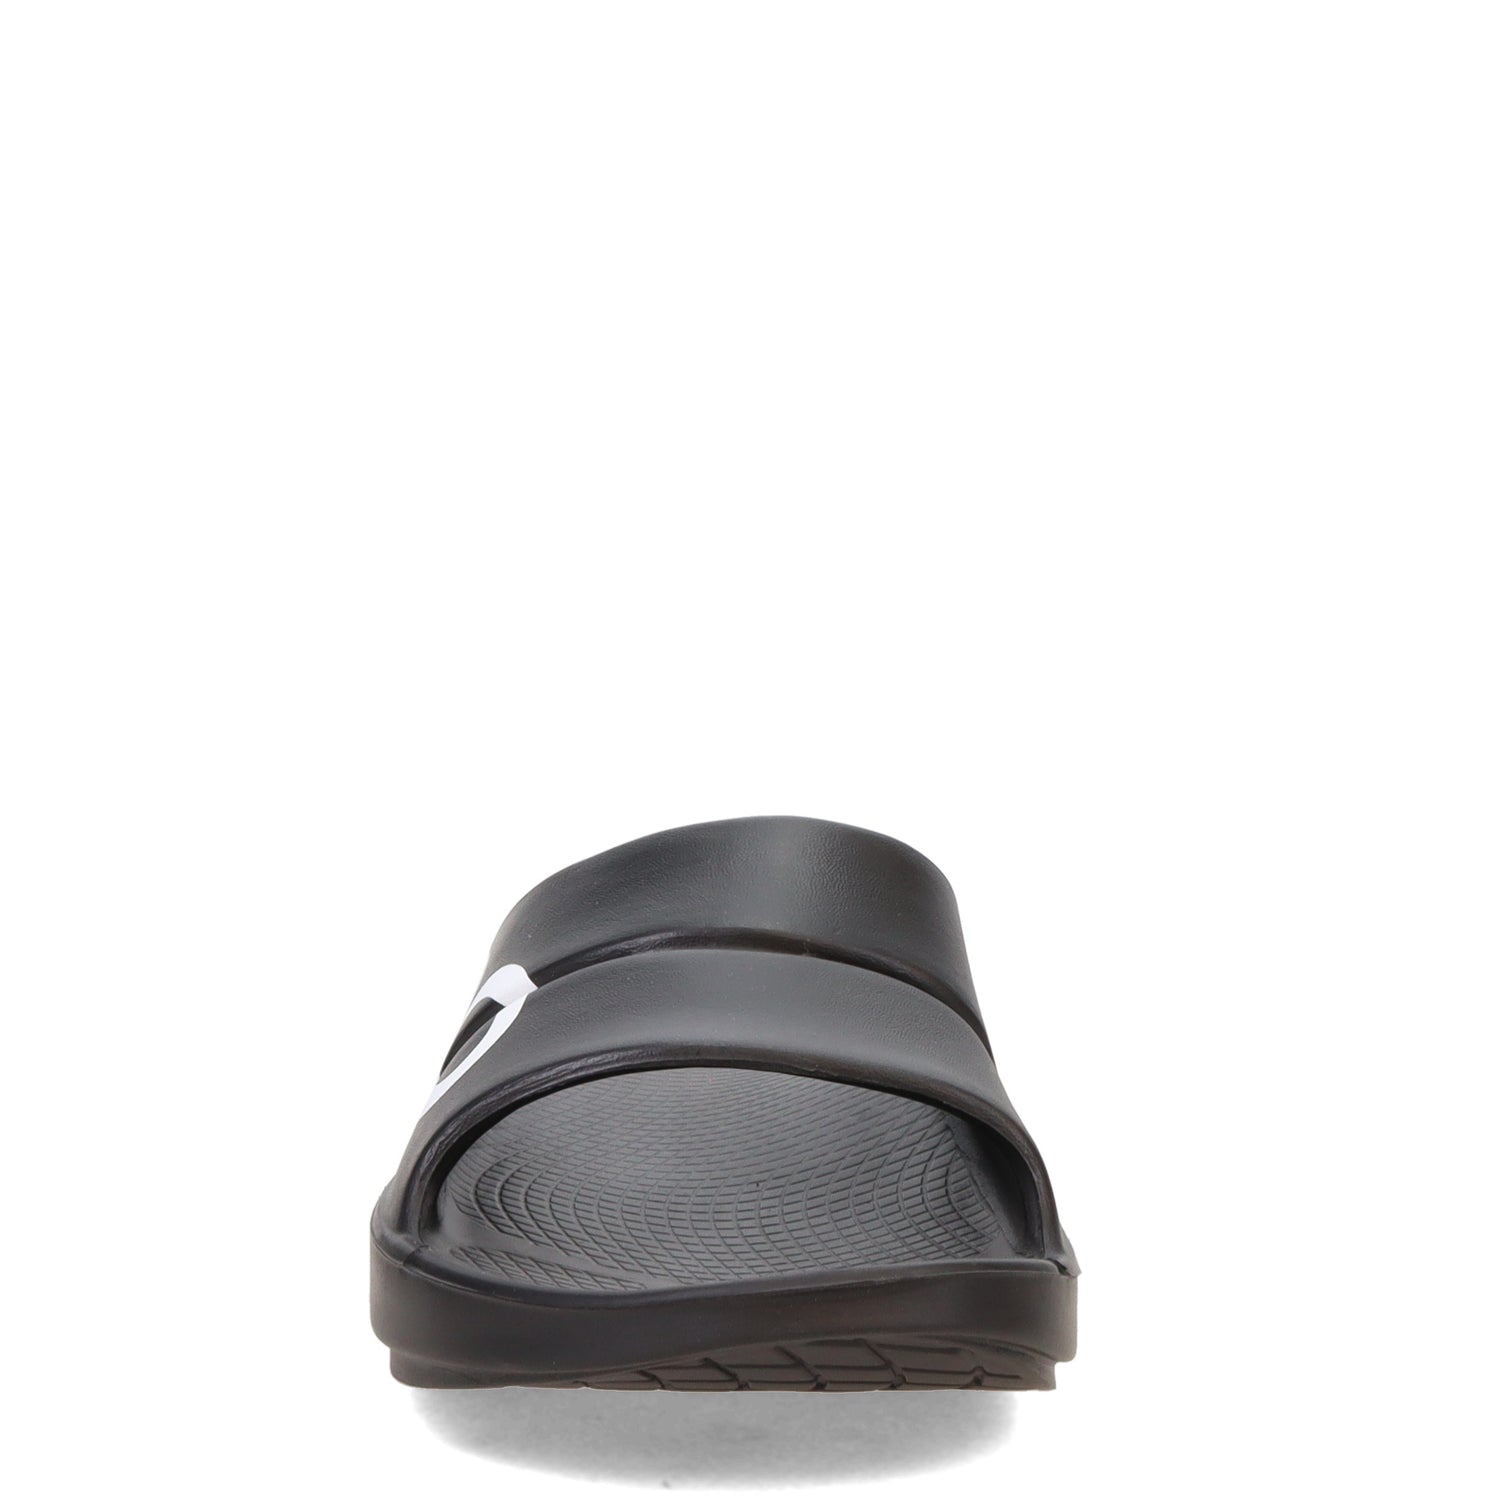 Peltz Shoes  Women's Oofos OOahh Slide Sandal BLACK/WHITE 1500-BLACKWHT